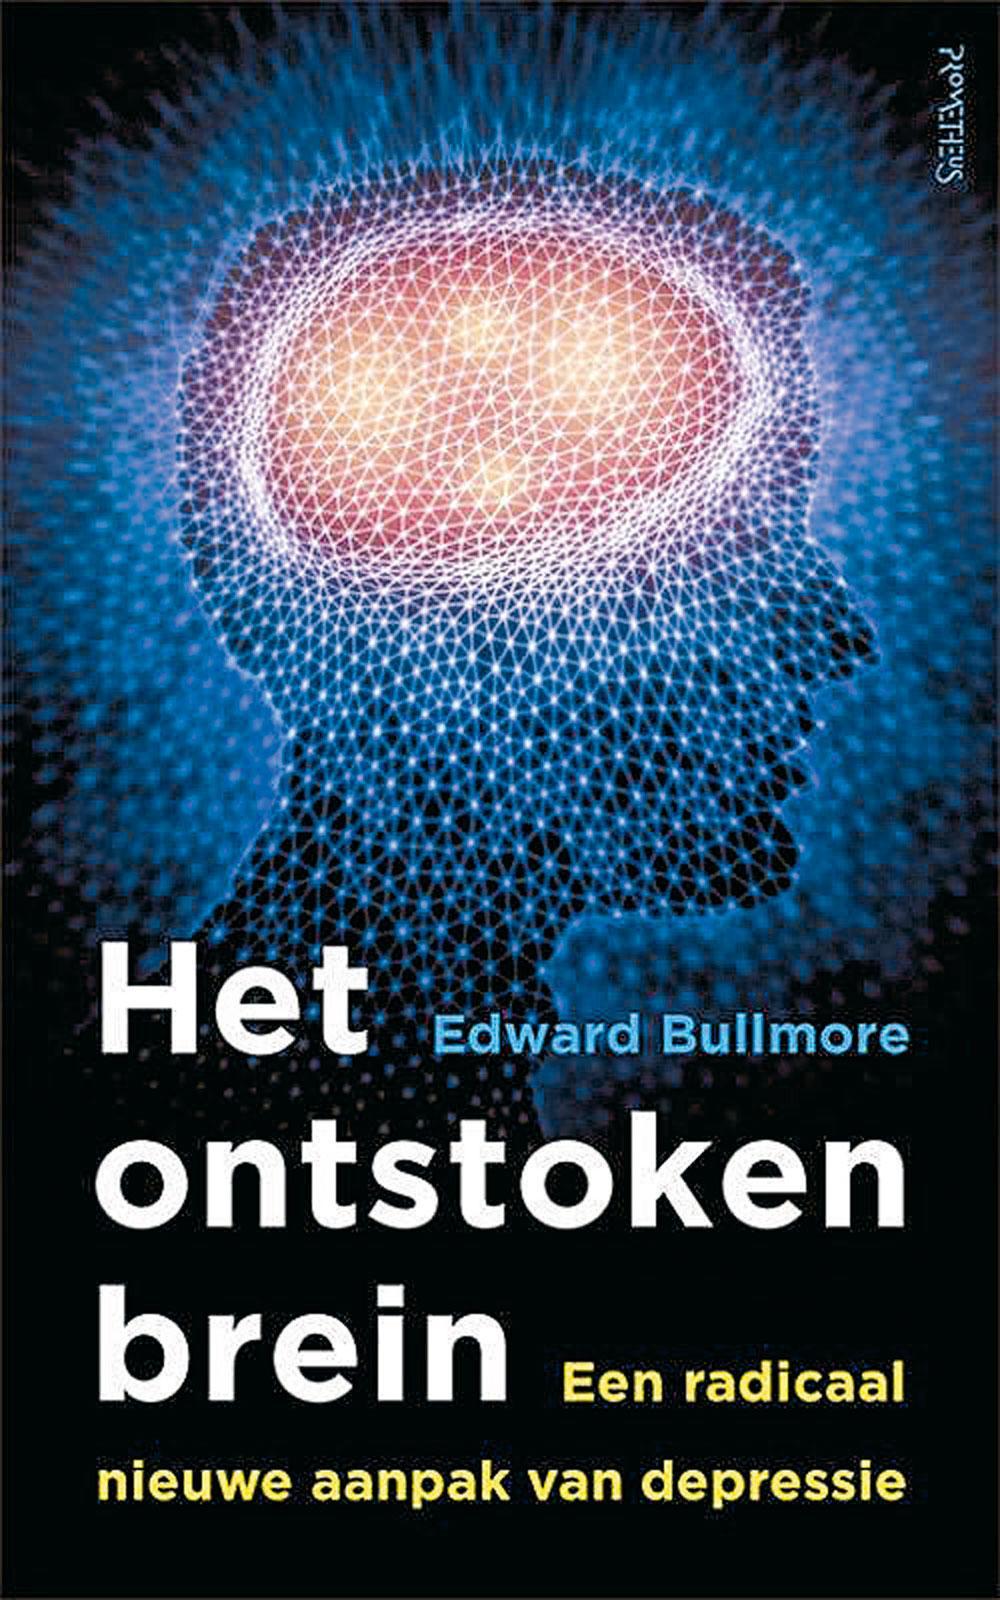 Edward Bullmore, Het ontstoken brein, Een radicaal nieuwe aanpak van depressie, Prometheus, 286 blz., 21,99 euro.